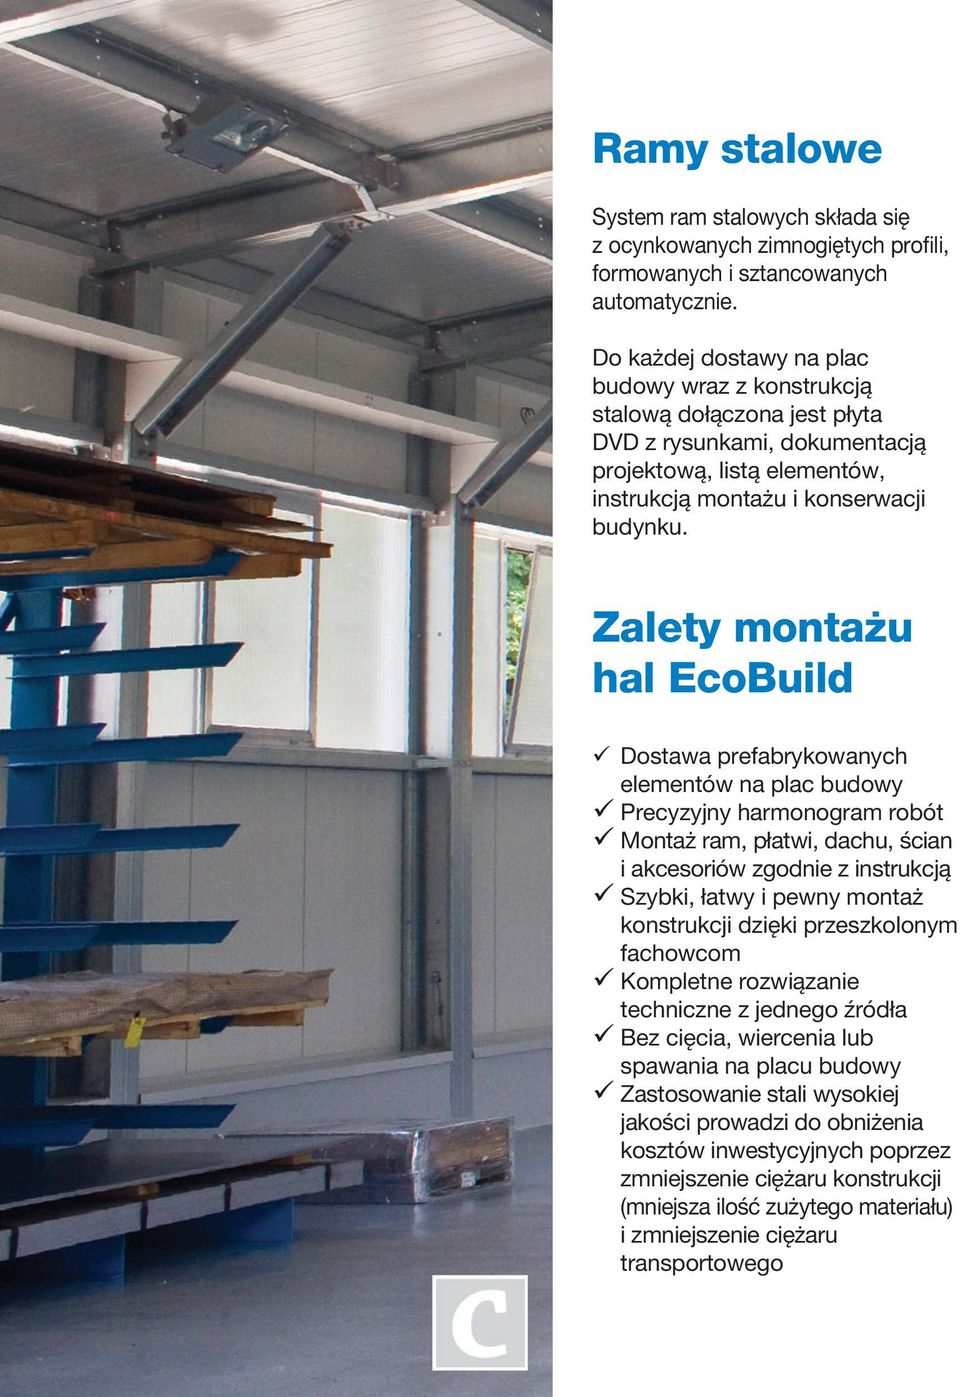 Zalety montażu hal EcoBuild Dostawa prefabrykowanych elementów na plac budowy Precyzyjny harmonogram robót Montaż ram, płatwi, dachu, ścian i akcesoriów zgodnie z instrukcją Szybki, łatwy i pewny